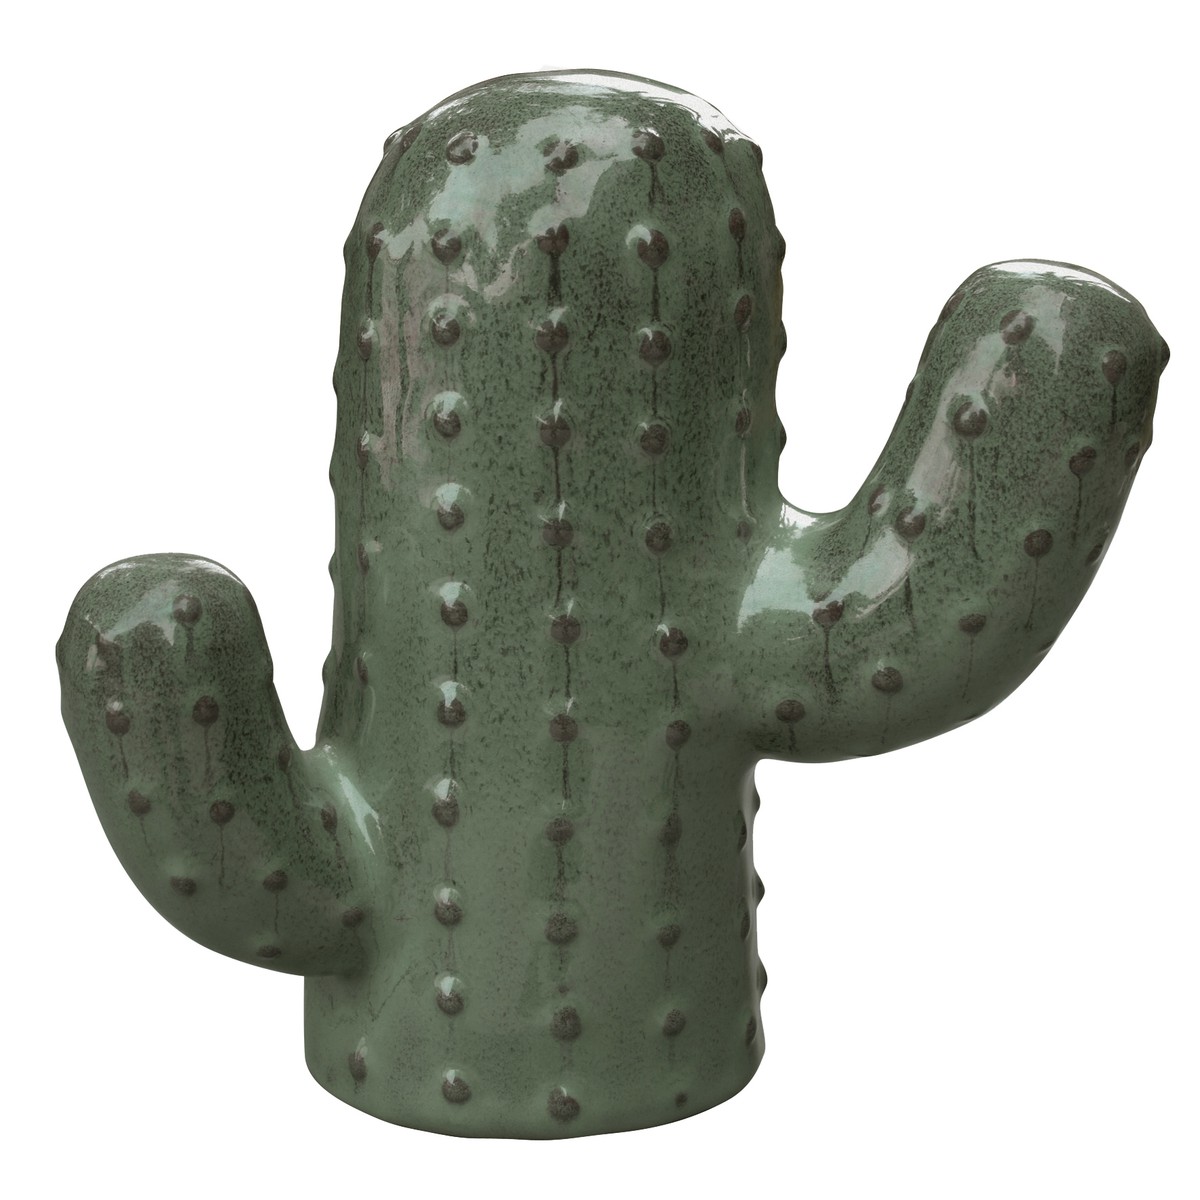   Deco cactus l25,5 vert olive Vert olive 25.5x12x24.5cm